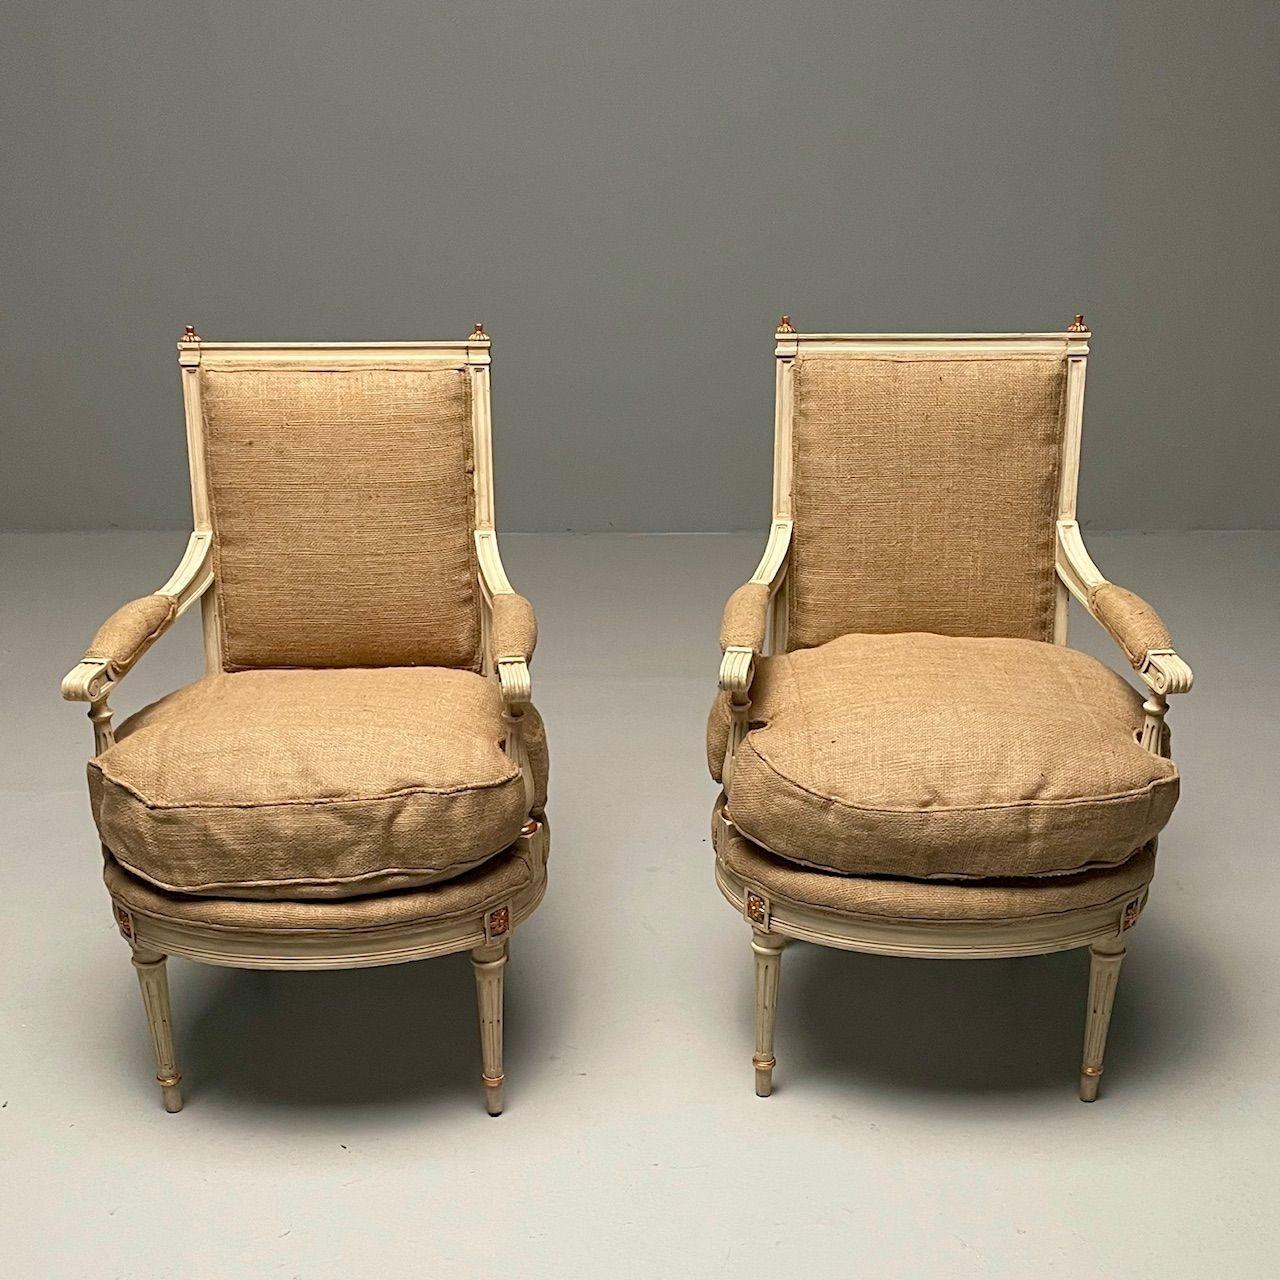 Französisch, Maison Jansen-Stil, Louis XVI.-Stil, Sessel, vergoldetes Holz, weiß lackiert, Sackleinen

Zwei französische Armlehnstühle im Louis-XVI-Stil, neu gepolstert mit Leinenstoff. Dieses fein konstruierte Paar von Maison Jansen inspirierter